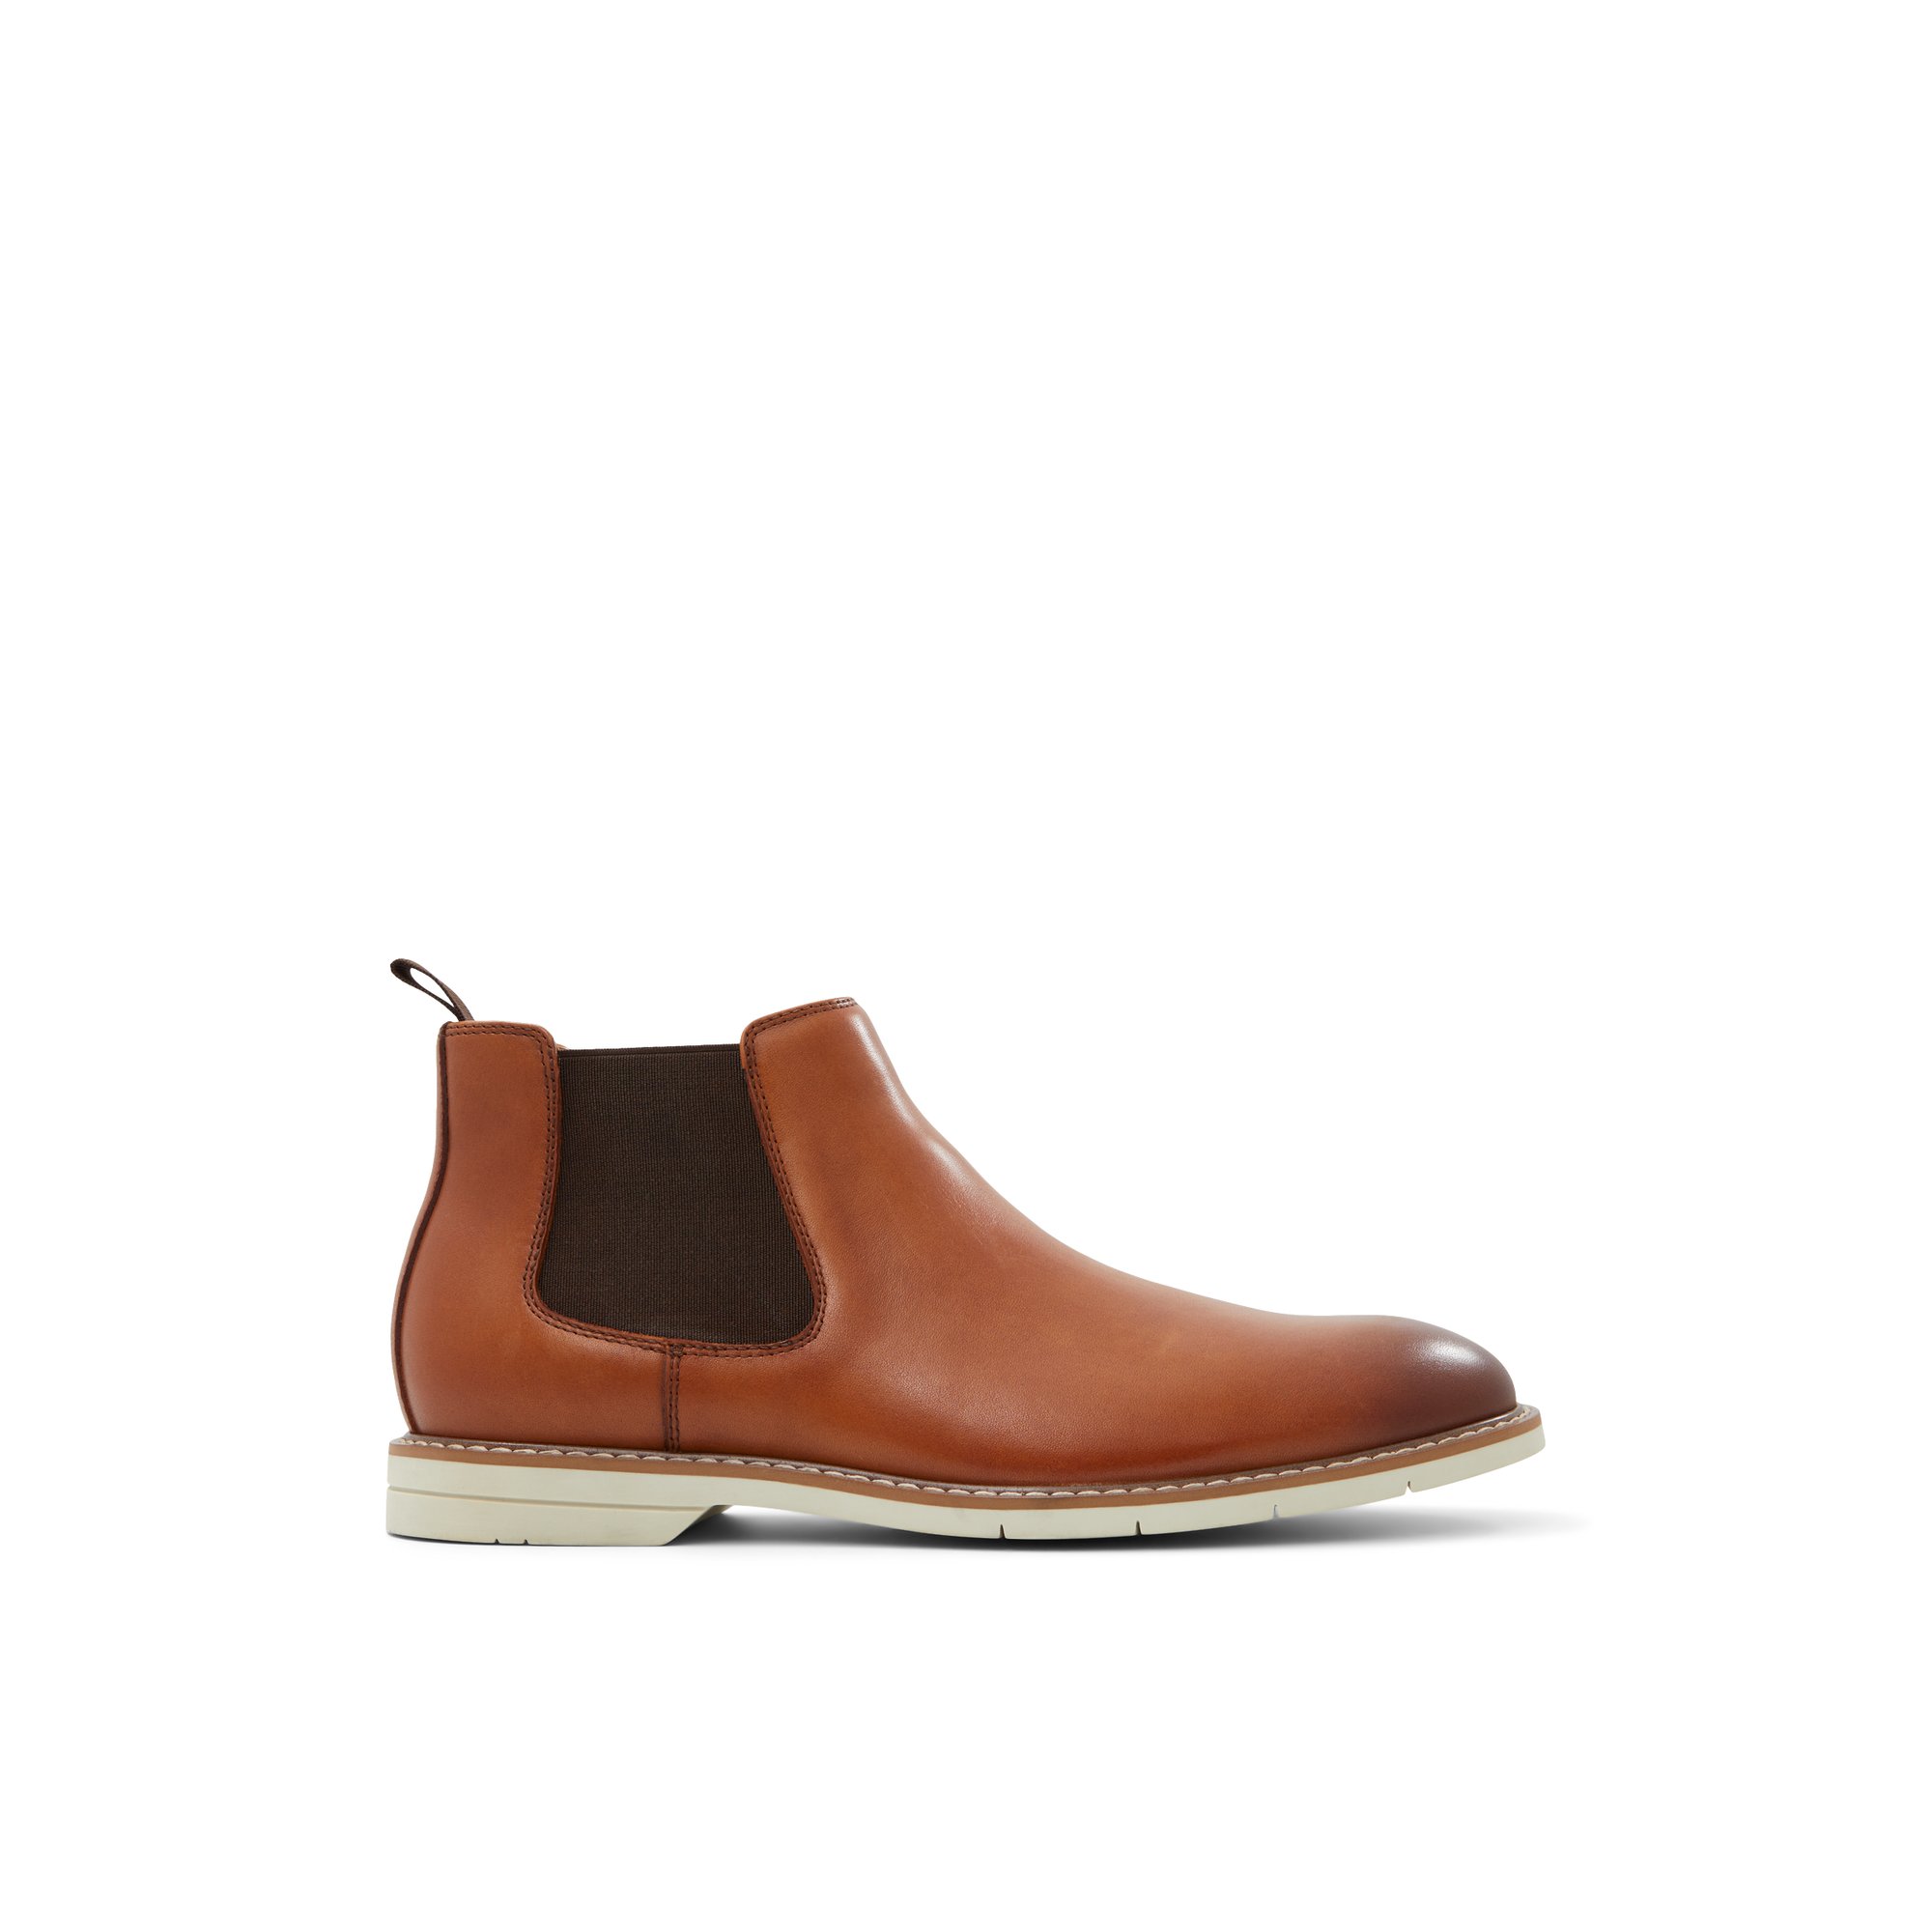 ALDO Darwin - Men's Boots - Brown